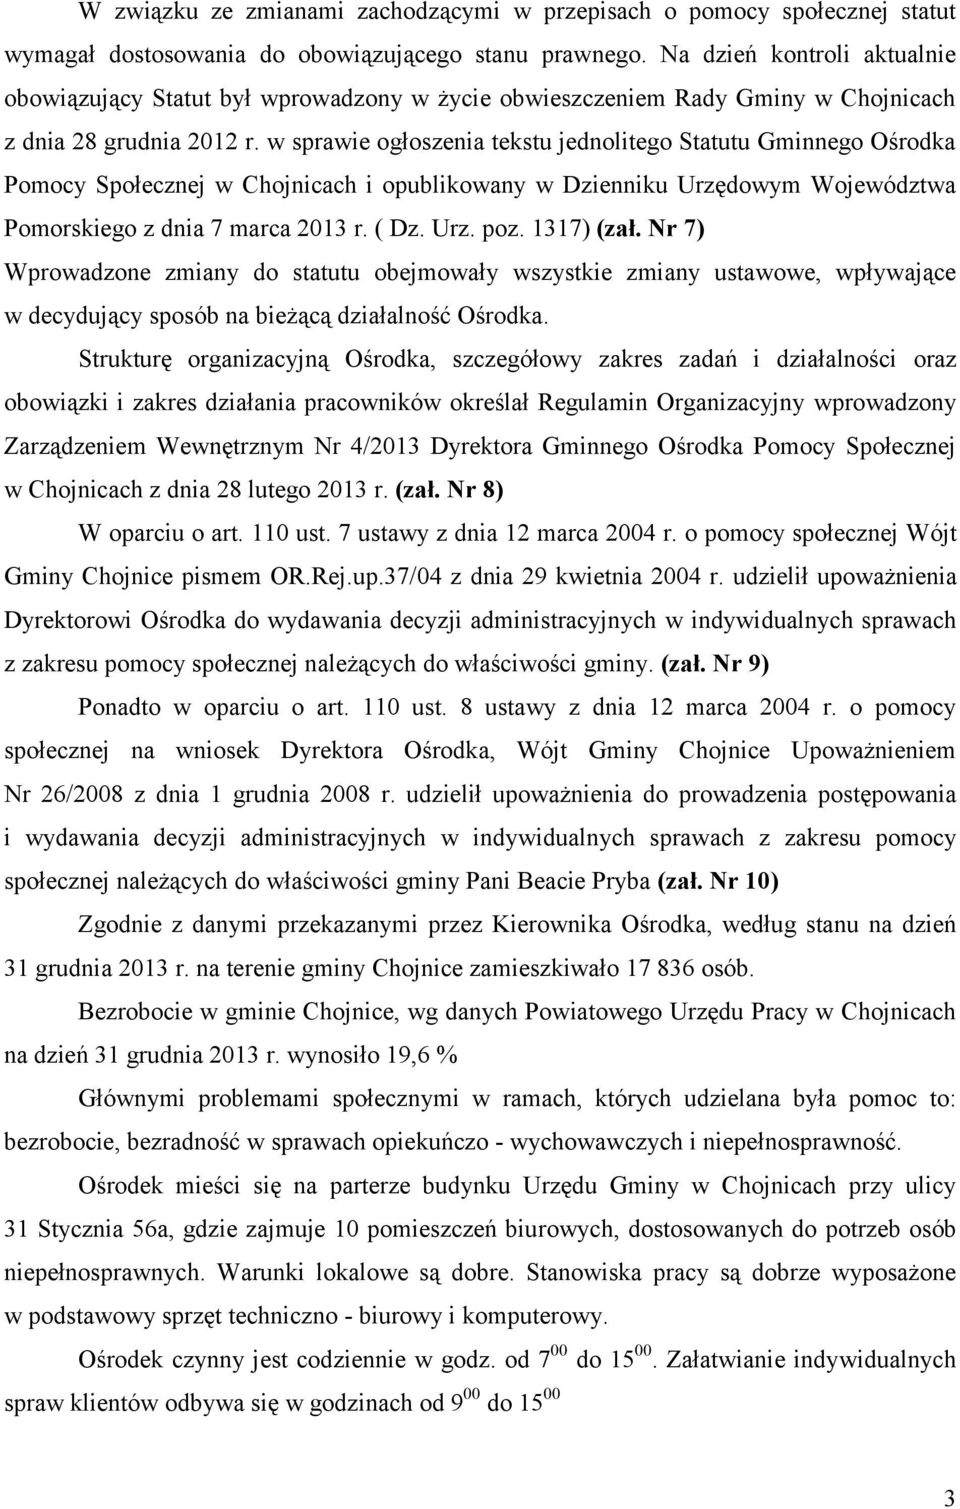 w sprawie ogłoszenia tekstu jednolitego Statutu Gminnego Ośrodka Pomocy Społecznej w Chojnicach i opublikowany w Dzienniku Urzędowym Województwa Pomorskiego z dnia 7 marca 2013 r. ( Dz. Urz. poz.